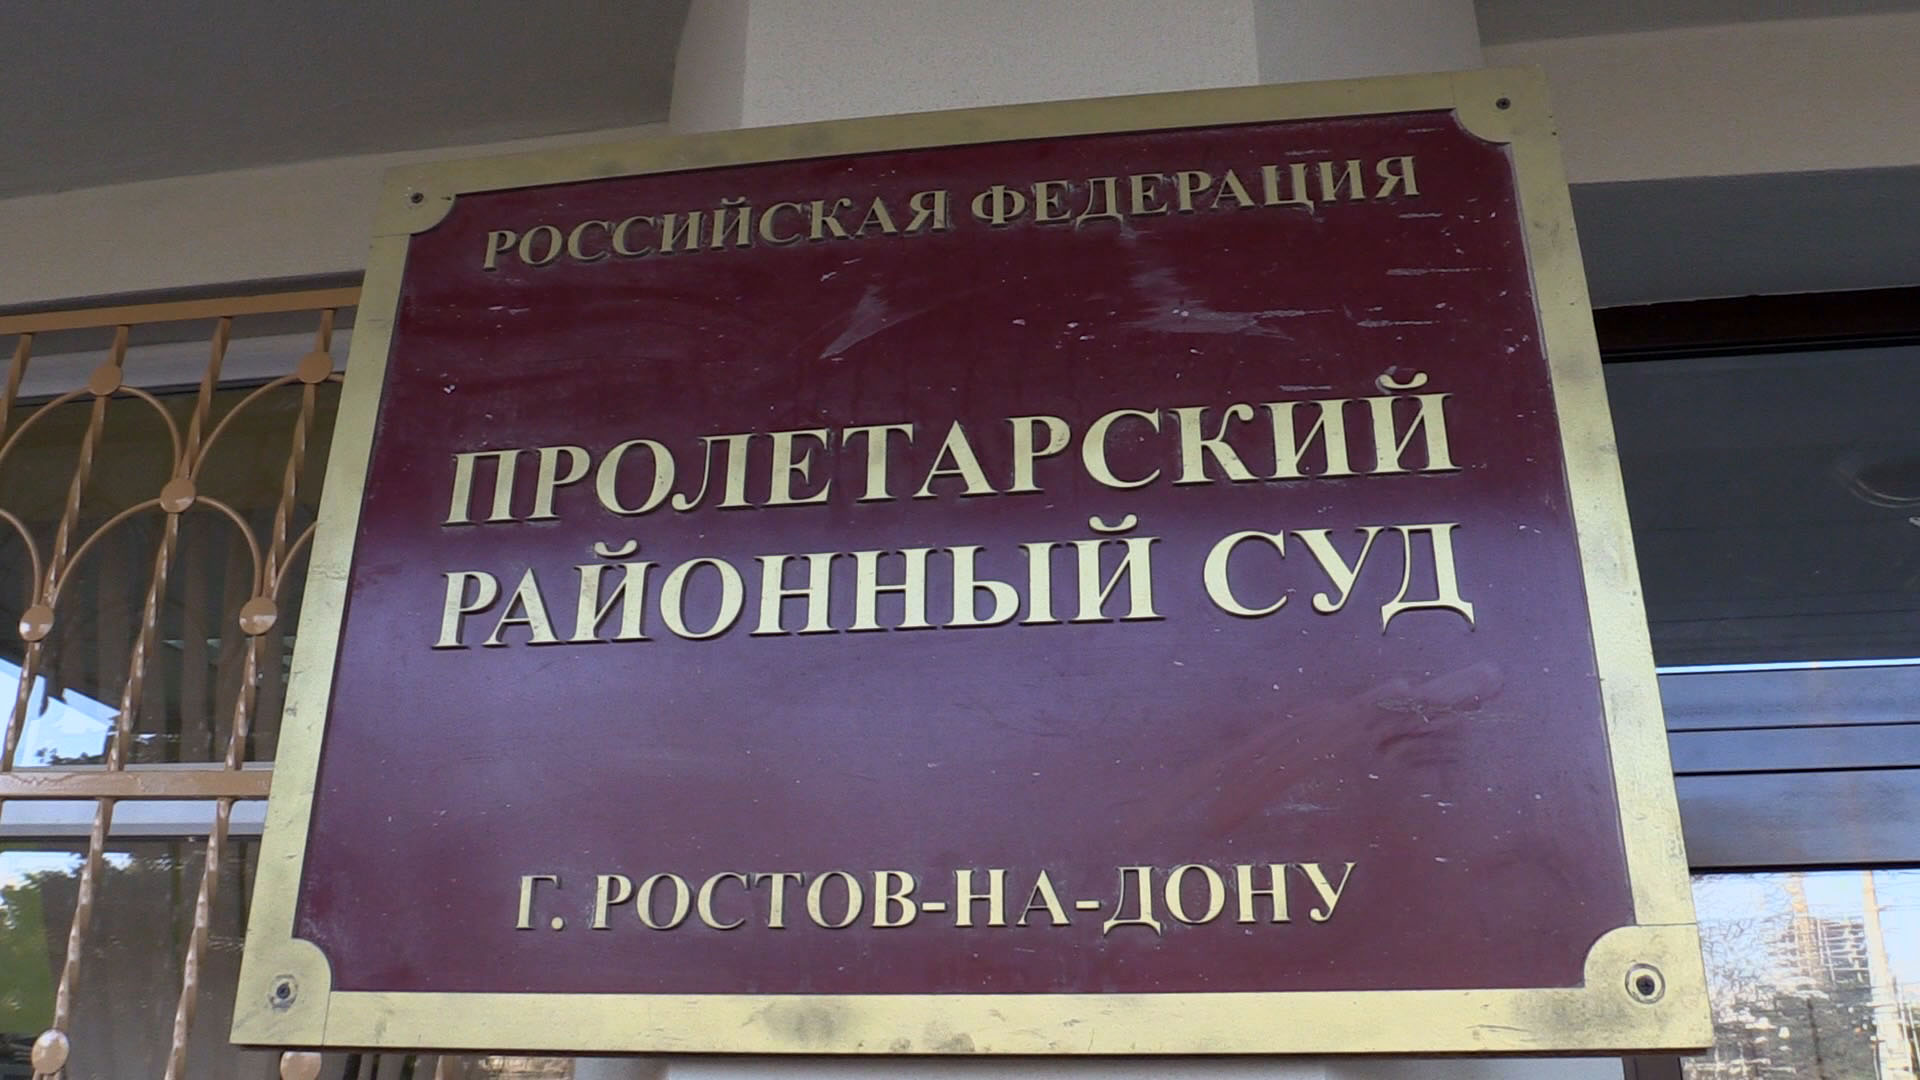 Сайт пролетарского районного суда ростовской области